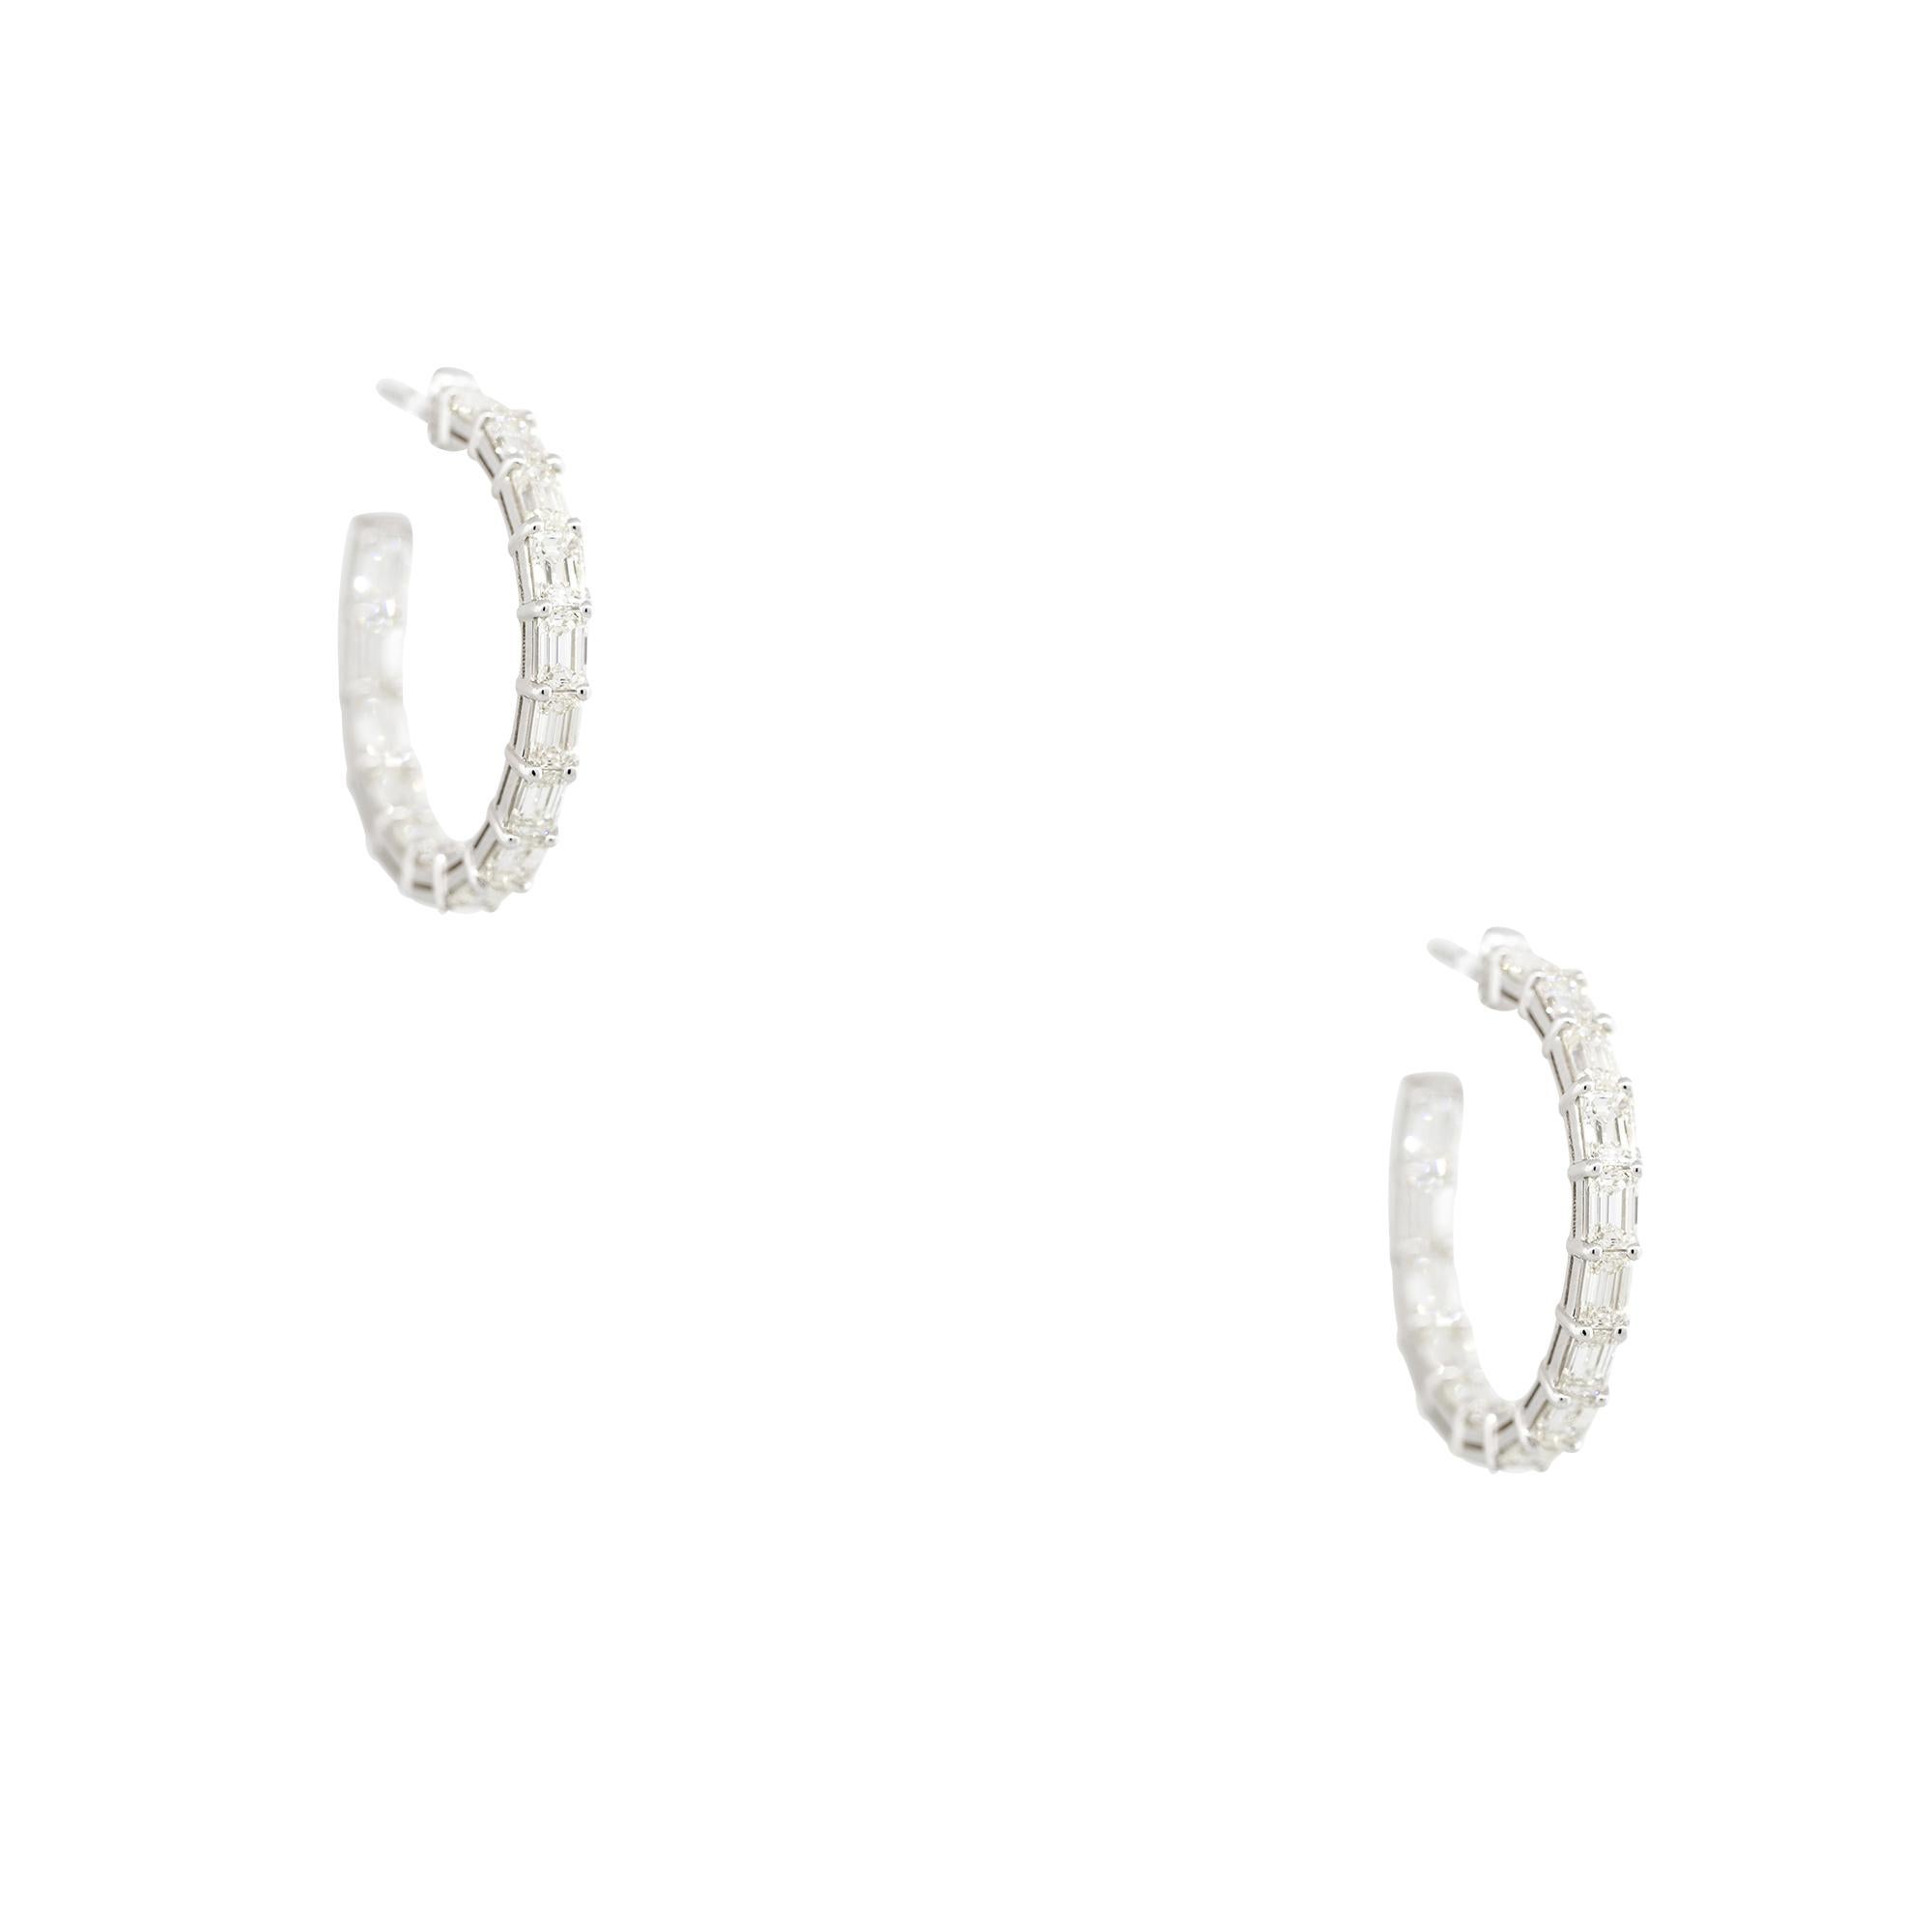 Boucles d'oreilles en or blanc 18k 5.70ctw Emerald Cut Diamond Hoop Ears
MATERIAL : Or blanc 18k
Détails des diamants : Environ 5,70ctw de diamants de taille émeraude. Les diamants sont sertis à l'envers sur les boucles d'oreilles. Les diamants ont